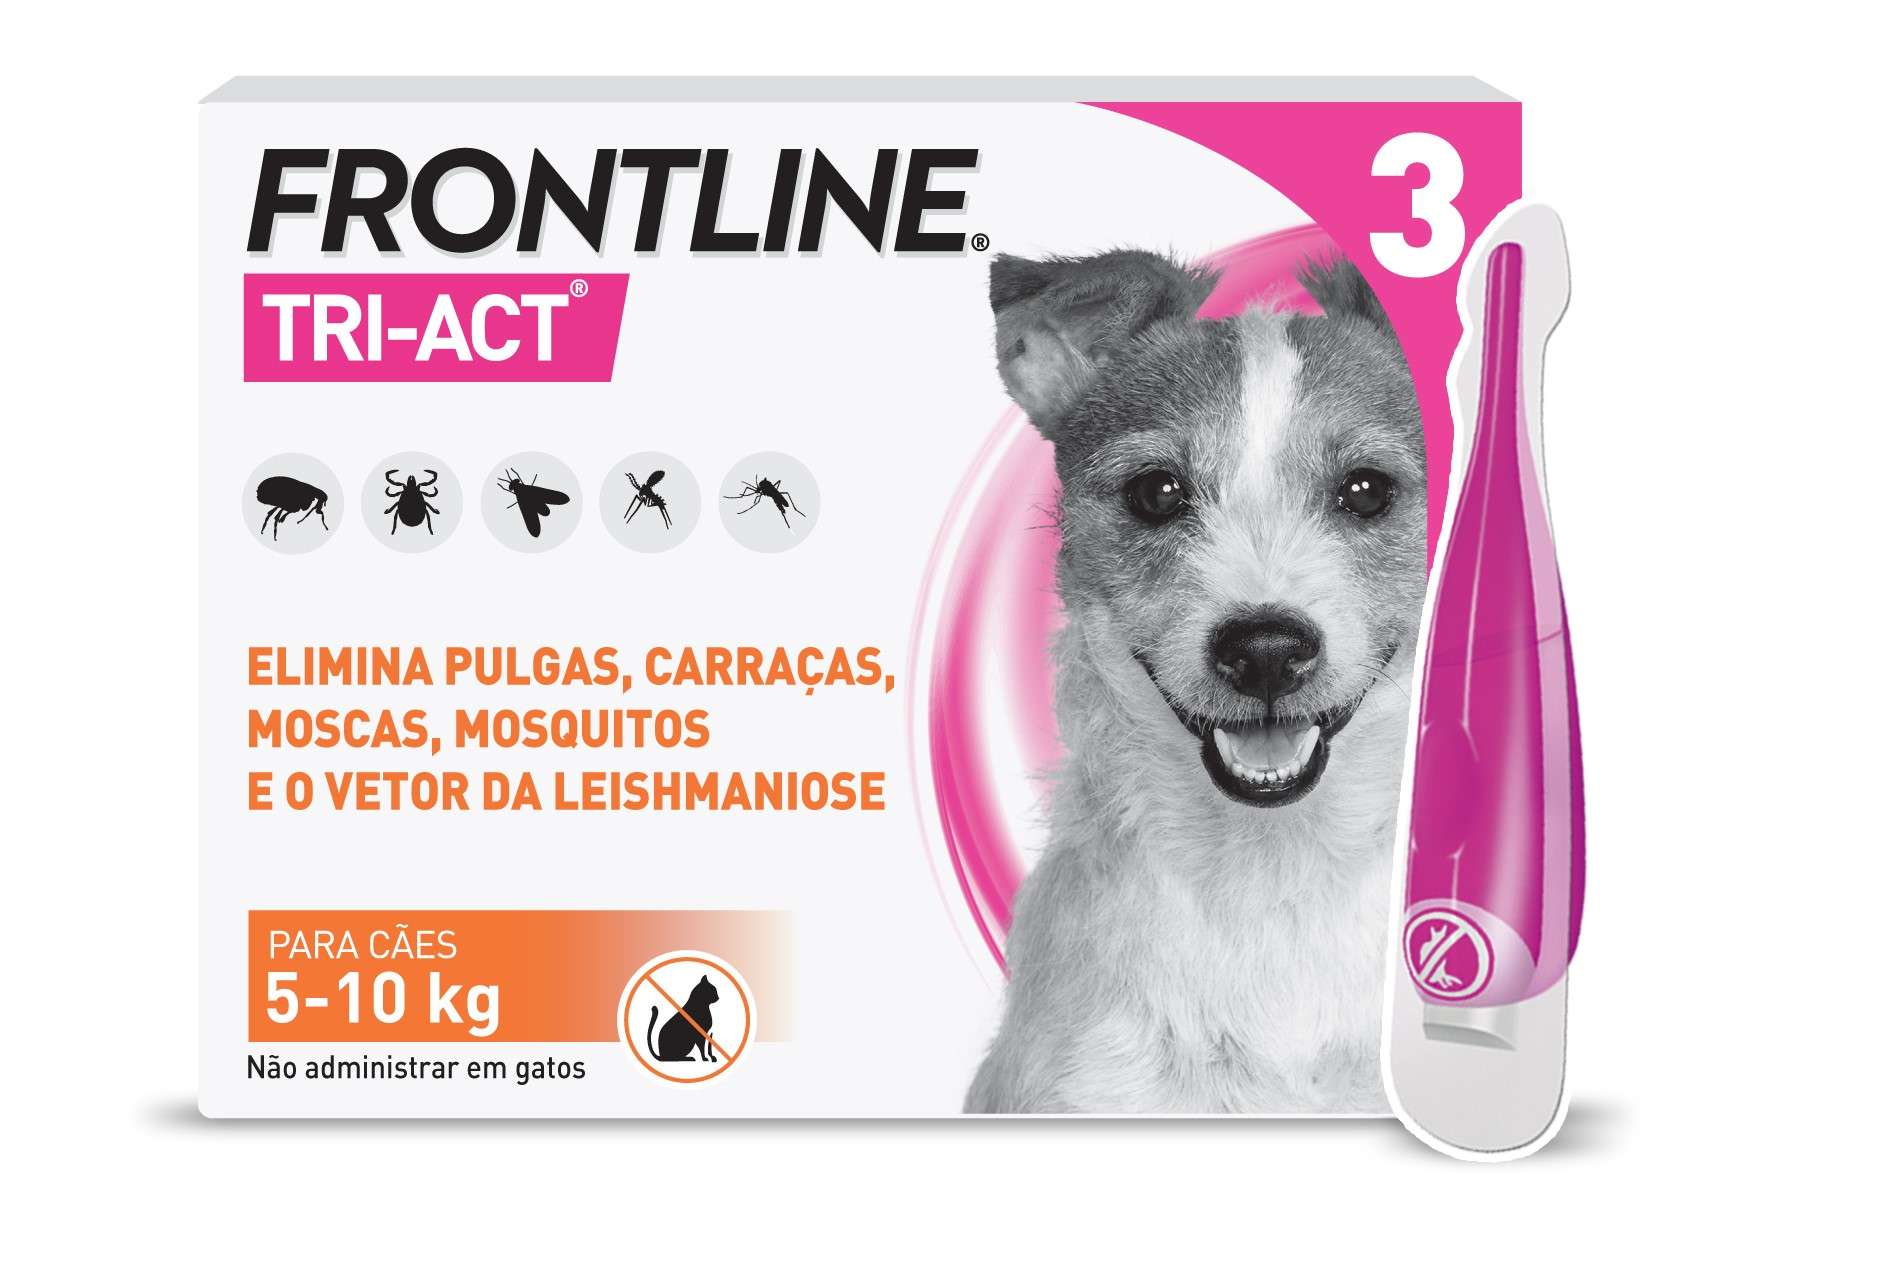 Frontline Tri-Act Antiparasitário Cão 5-10kg 3 unidades